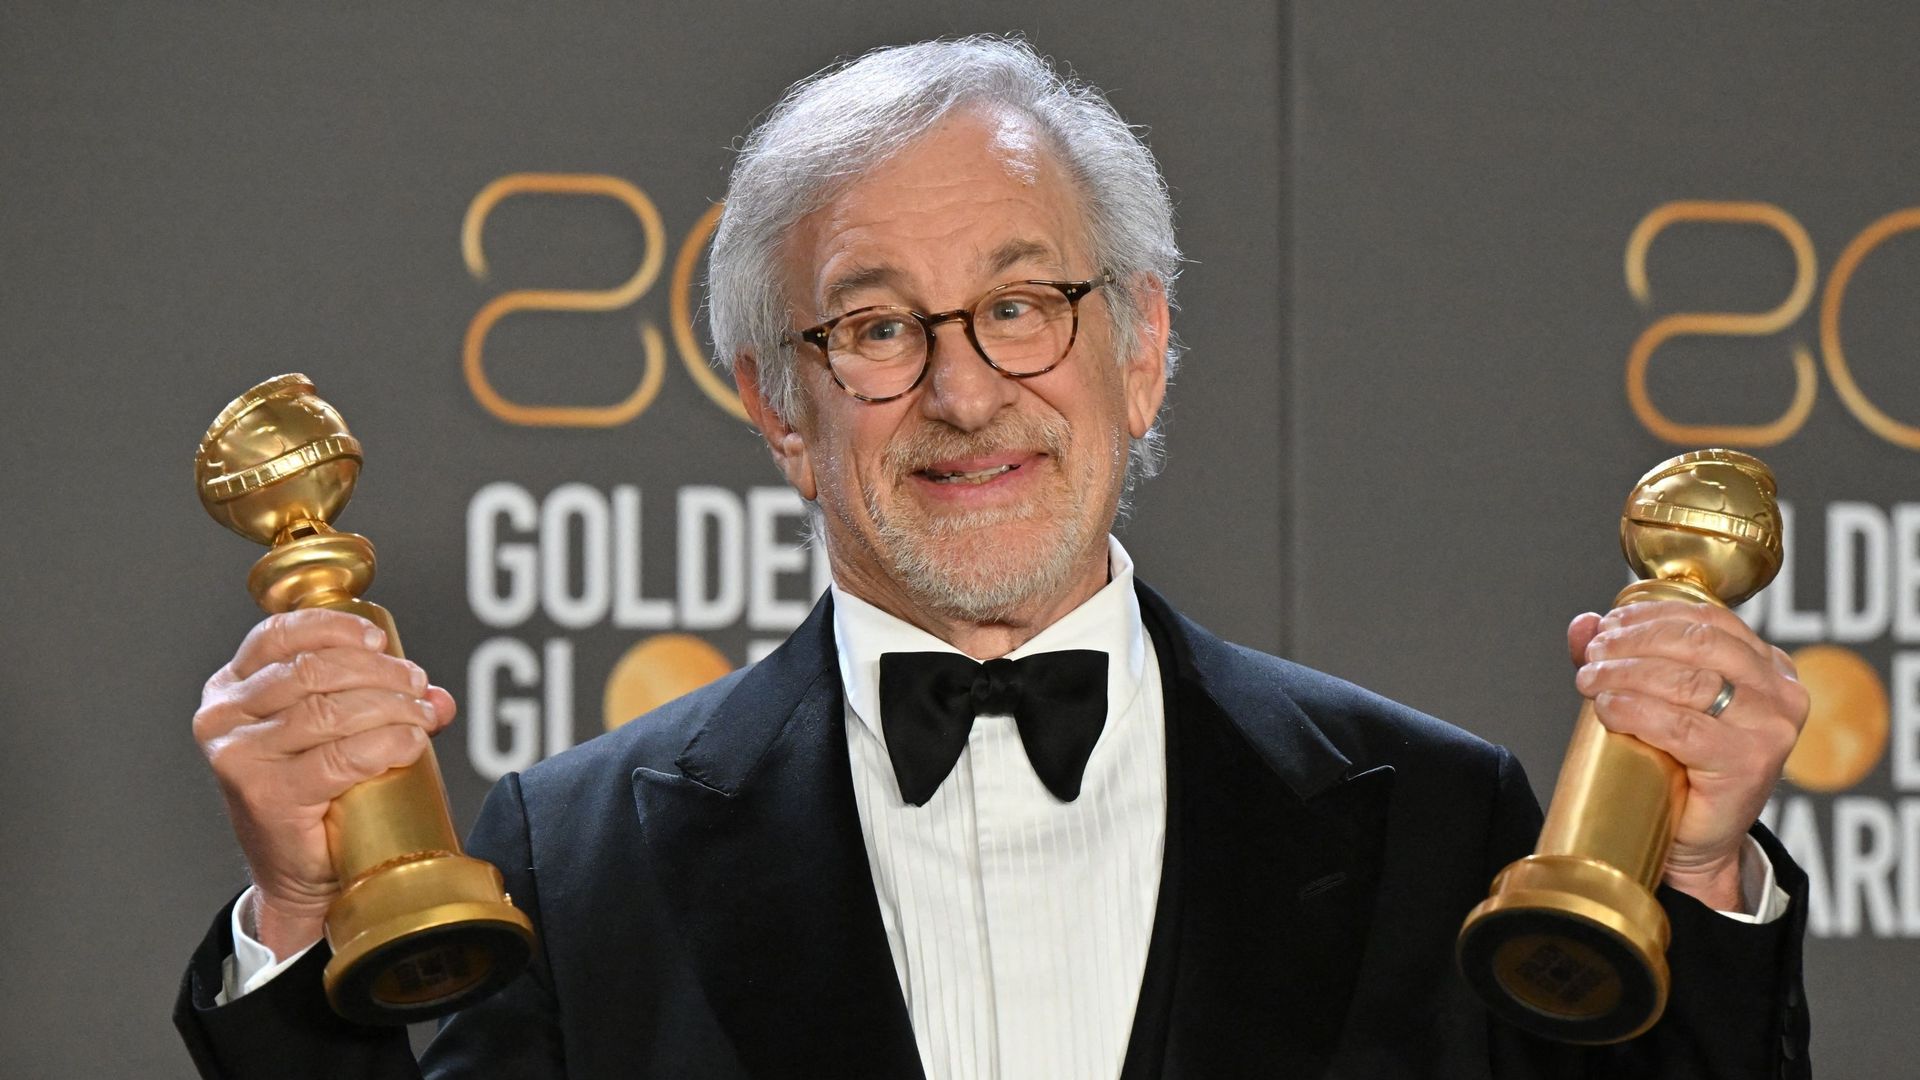 Meilleur réalisateur et meilleur film "The Fabelmans", Steven Spielberg est doublement honoré par les Golden Globes